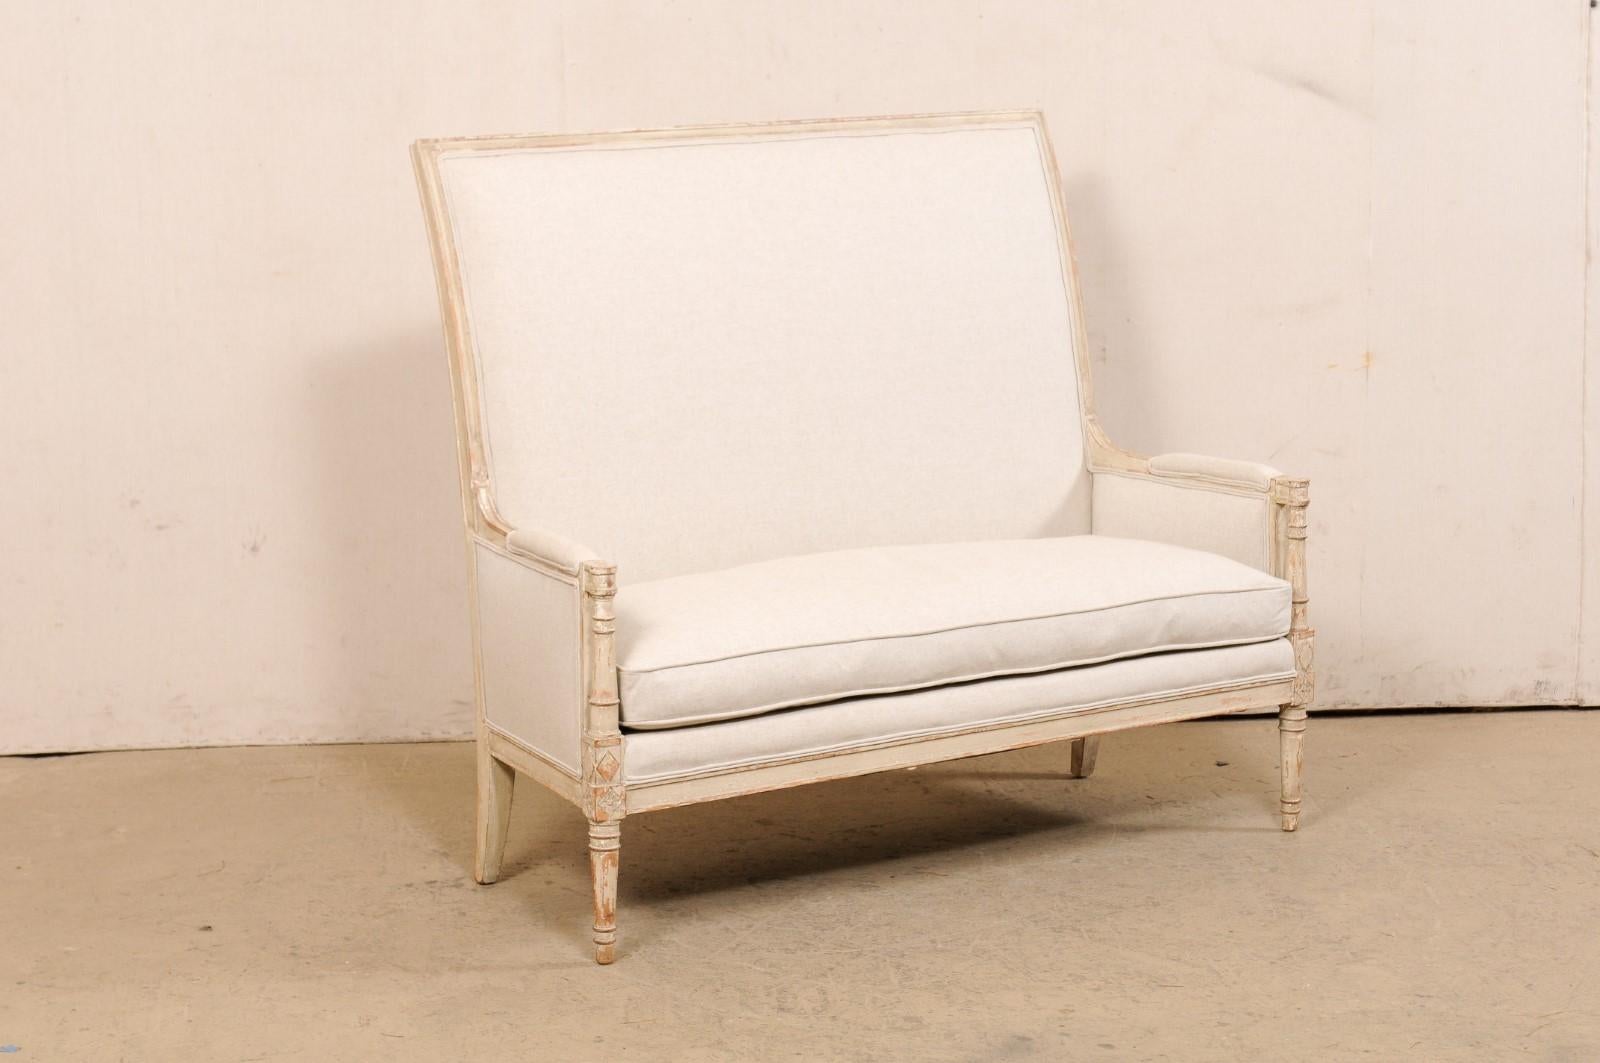 Ein Hochlehner-Sofa im französischen Stil, entworfen von dem amerikanischen Möbelhersteller Yale R. Burge. Dieses Vintage-Sofa wurde mit französischen Design-Einflüssen fein gearbeitet und verfügt über eine schöne hohe Rückenlehne, gepolstert und in